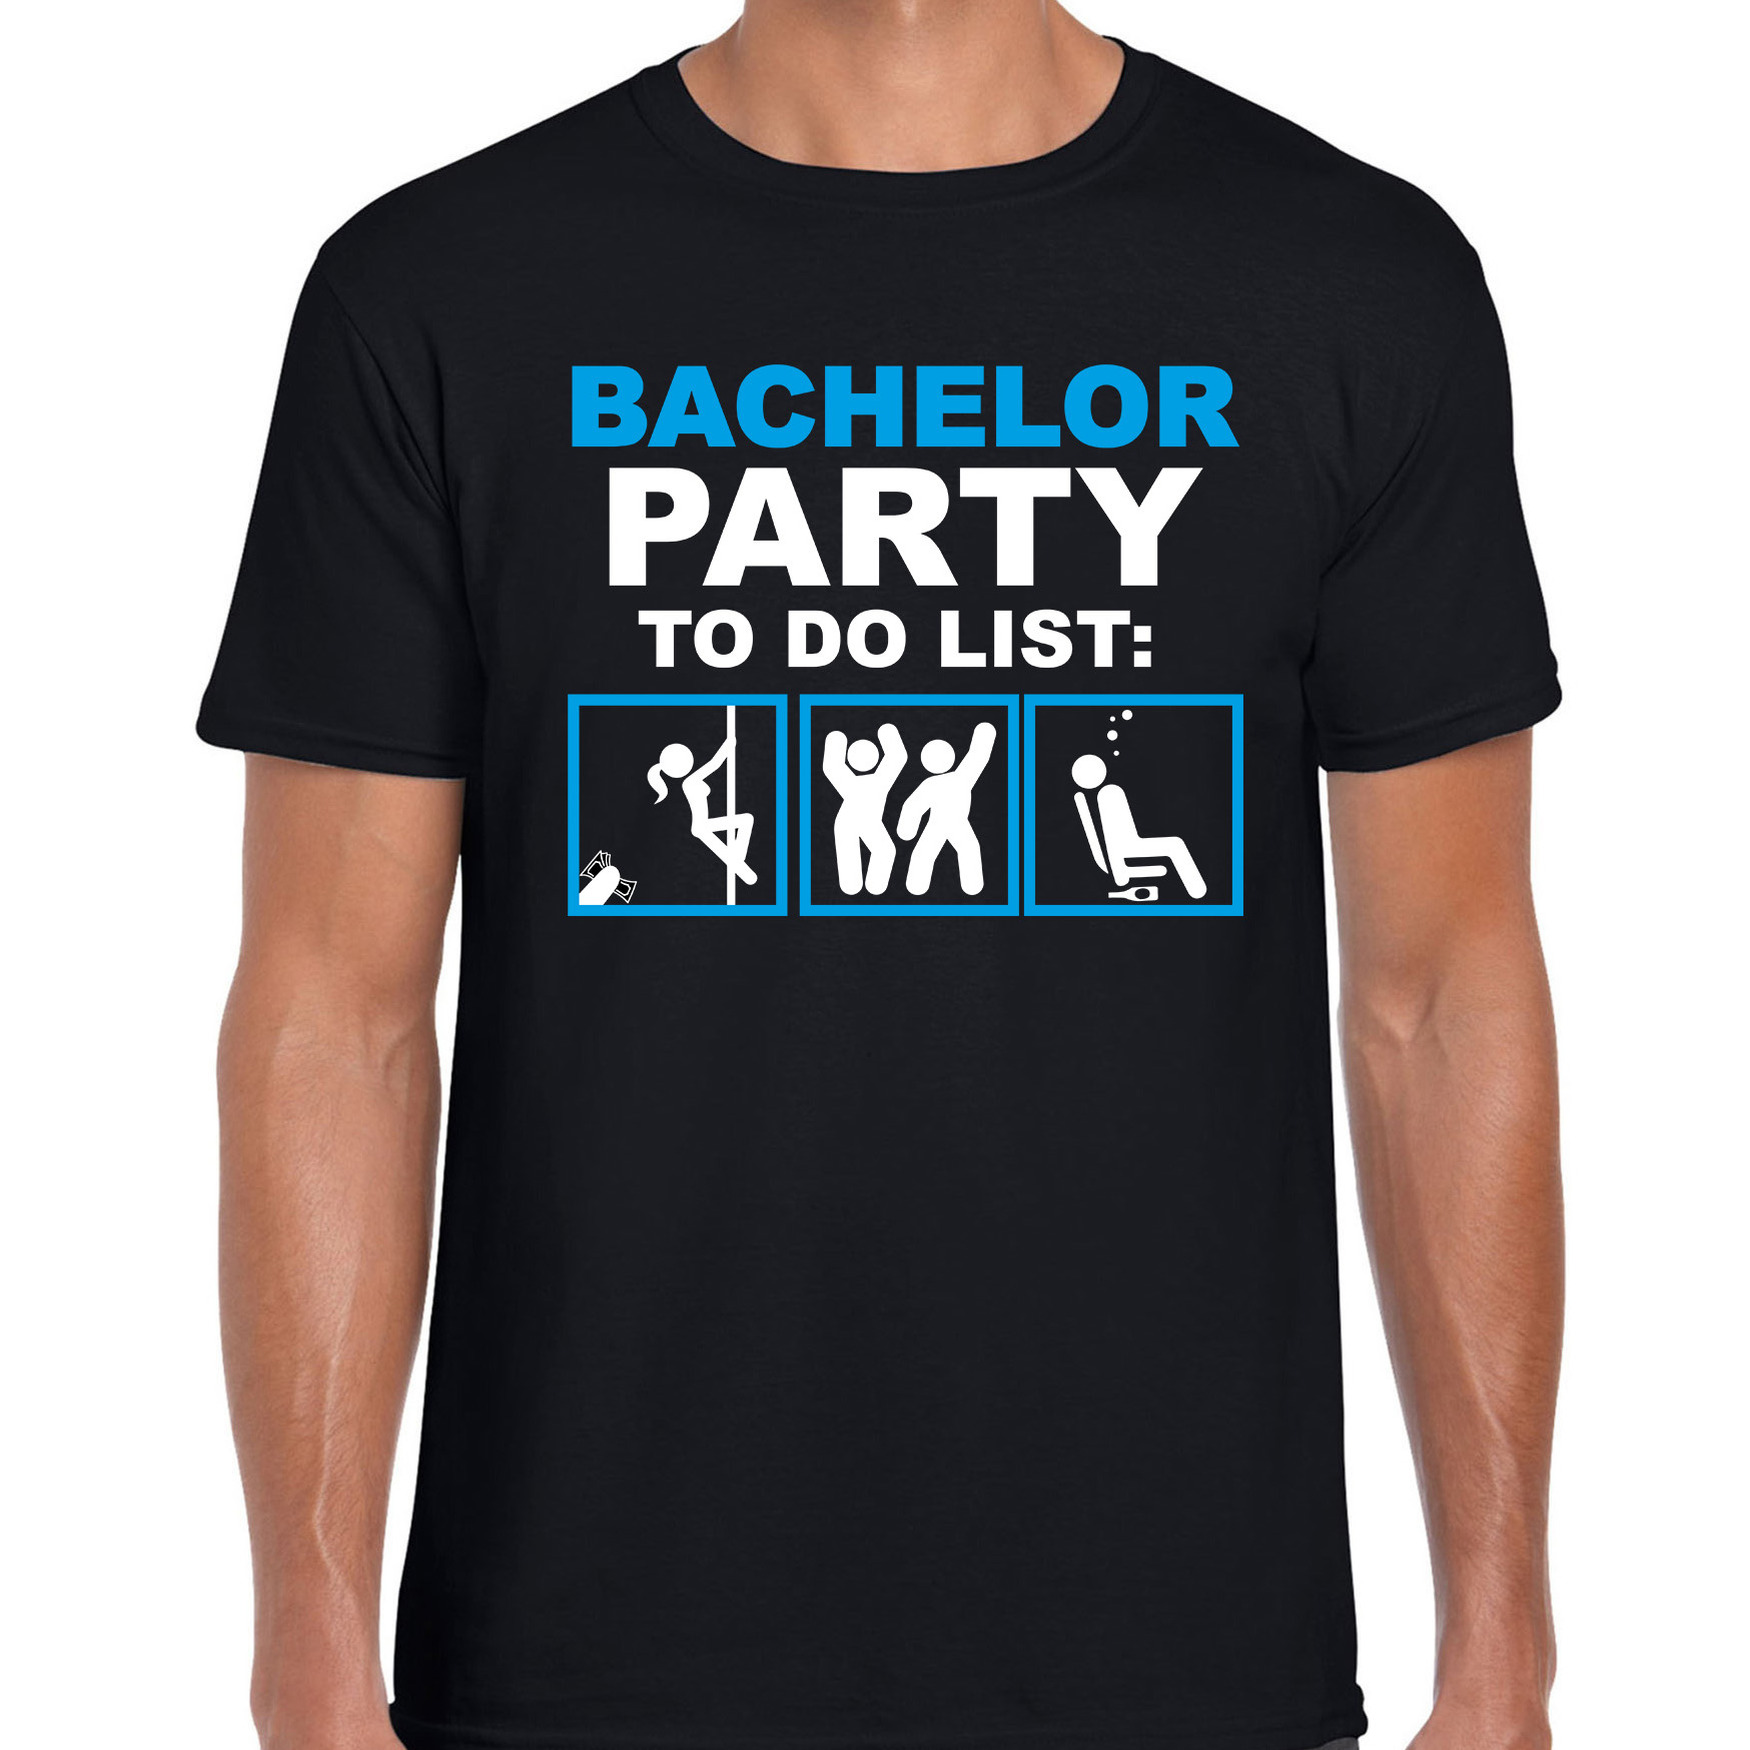 Bachelor party to do list vrijgezellen feest t-shirt zwart heren